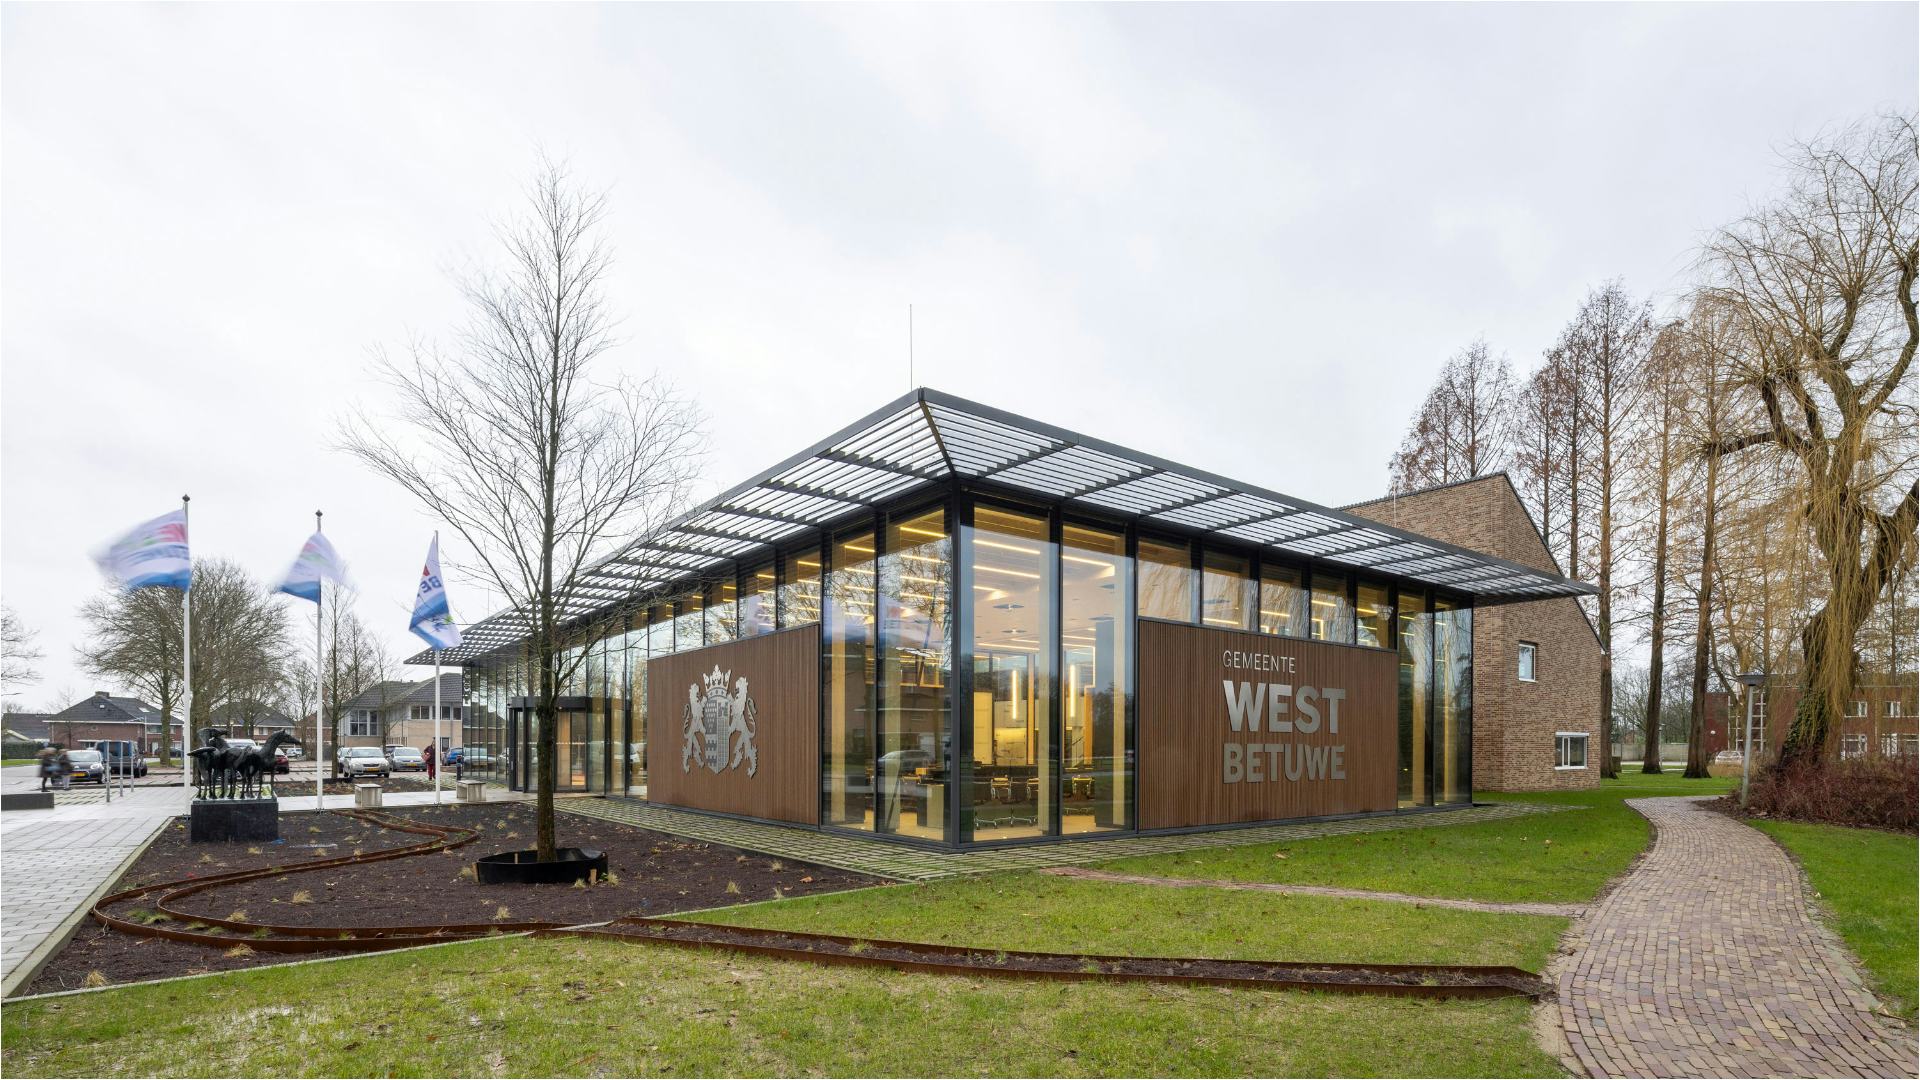 Verbouwing gemeentehuis West Betuwe, Geldermalsen - cepezed